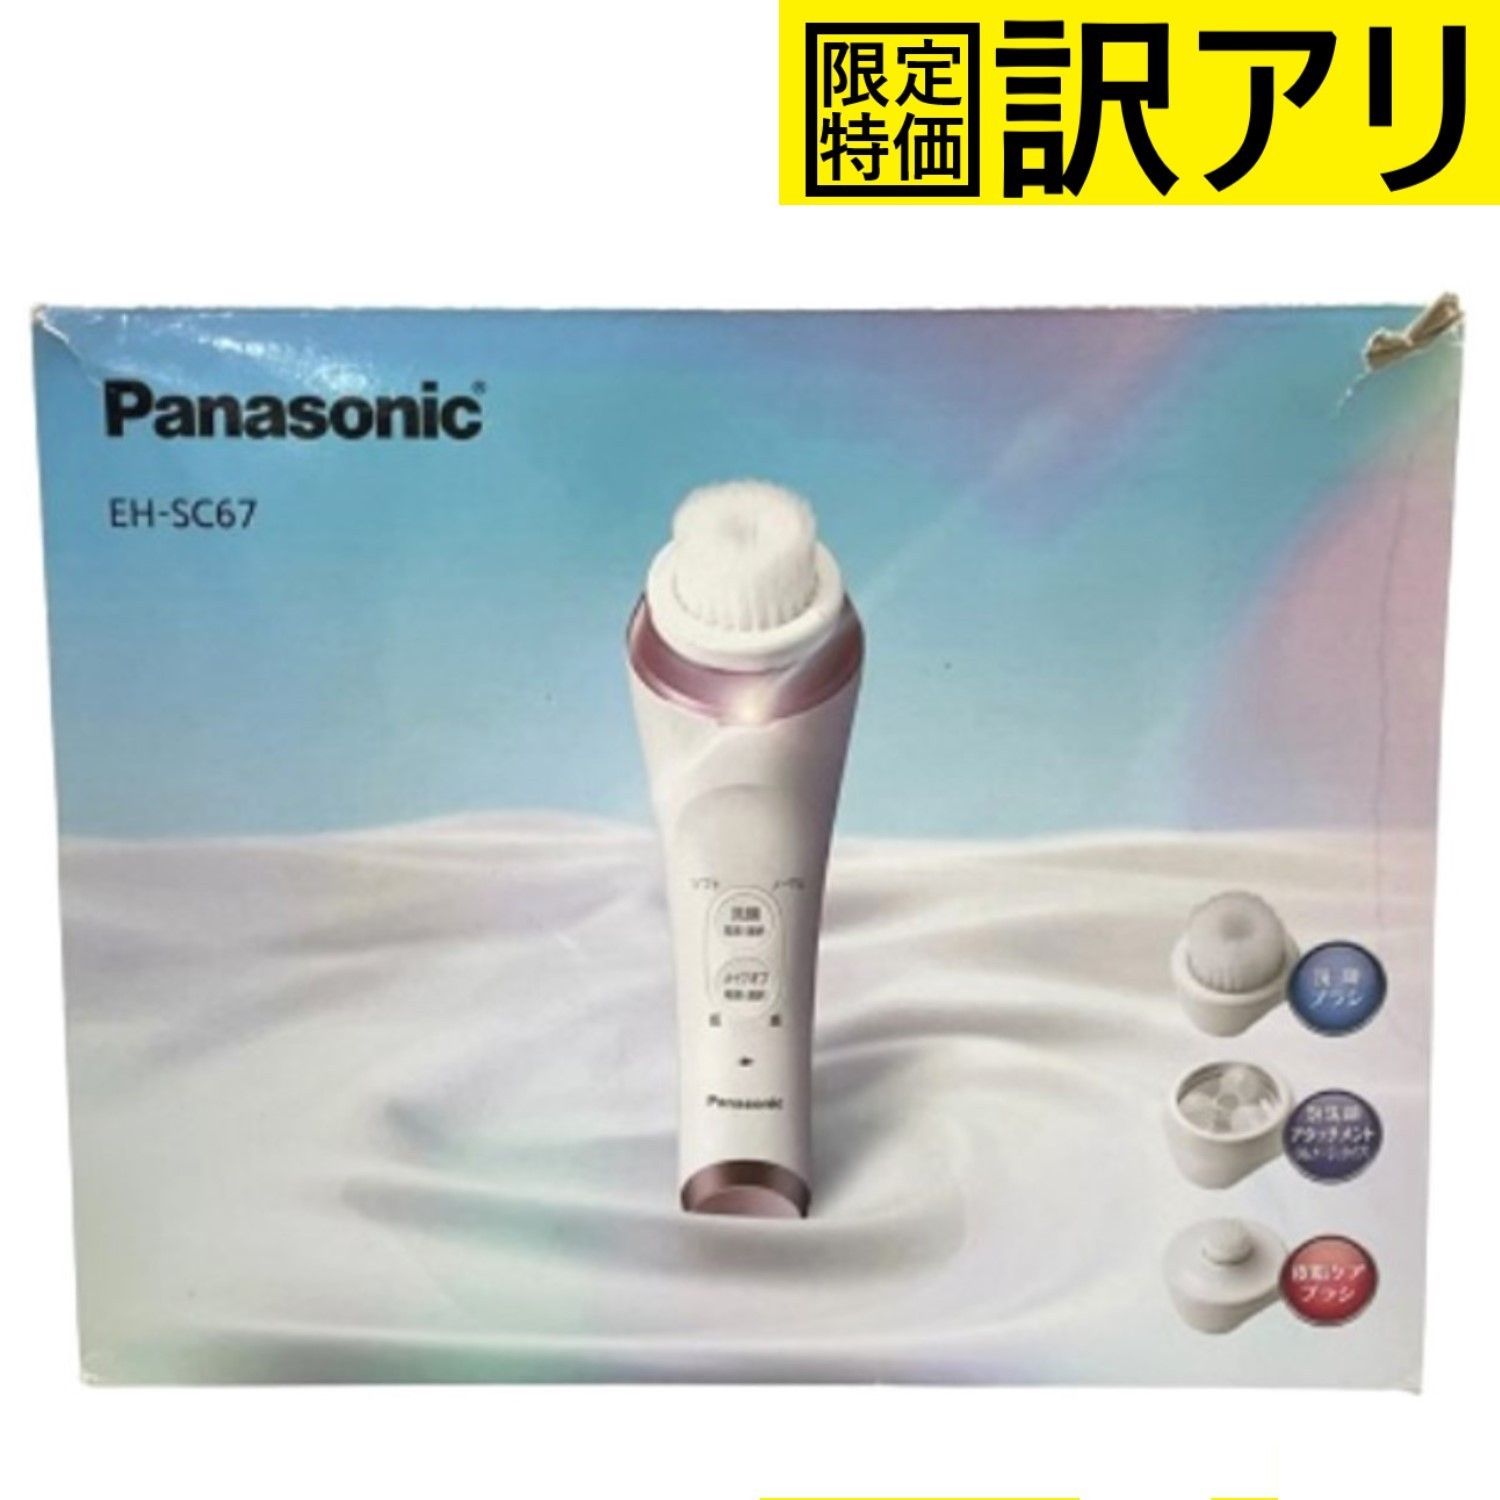 パナソニック 洗顔美容器 濃密泡エステ EH-SC67 - ボディ・フェイスケア